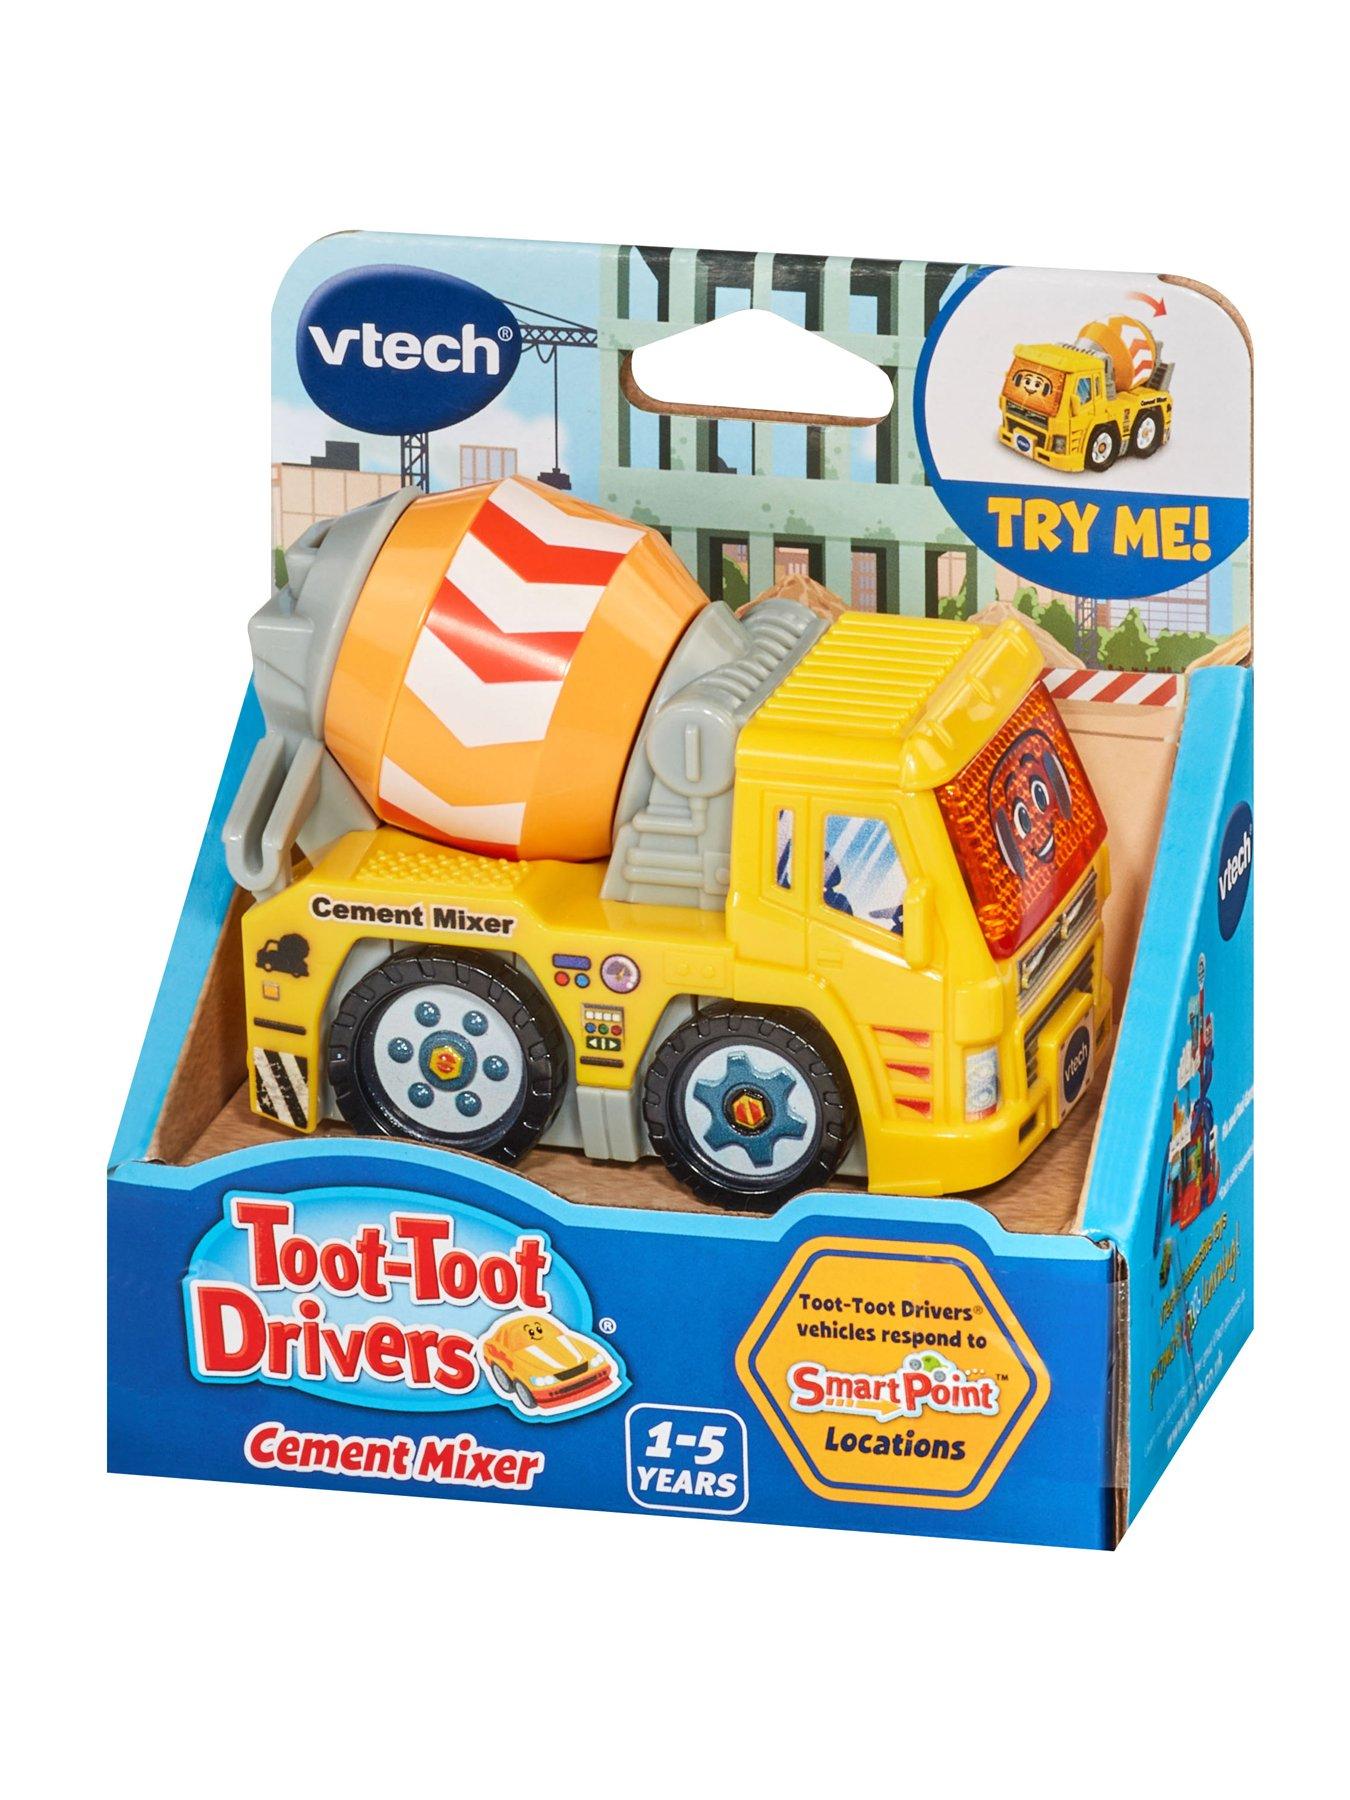 VTech Toot-Toot Drivers Cement Mixer